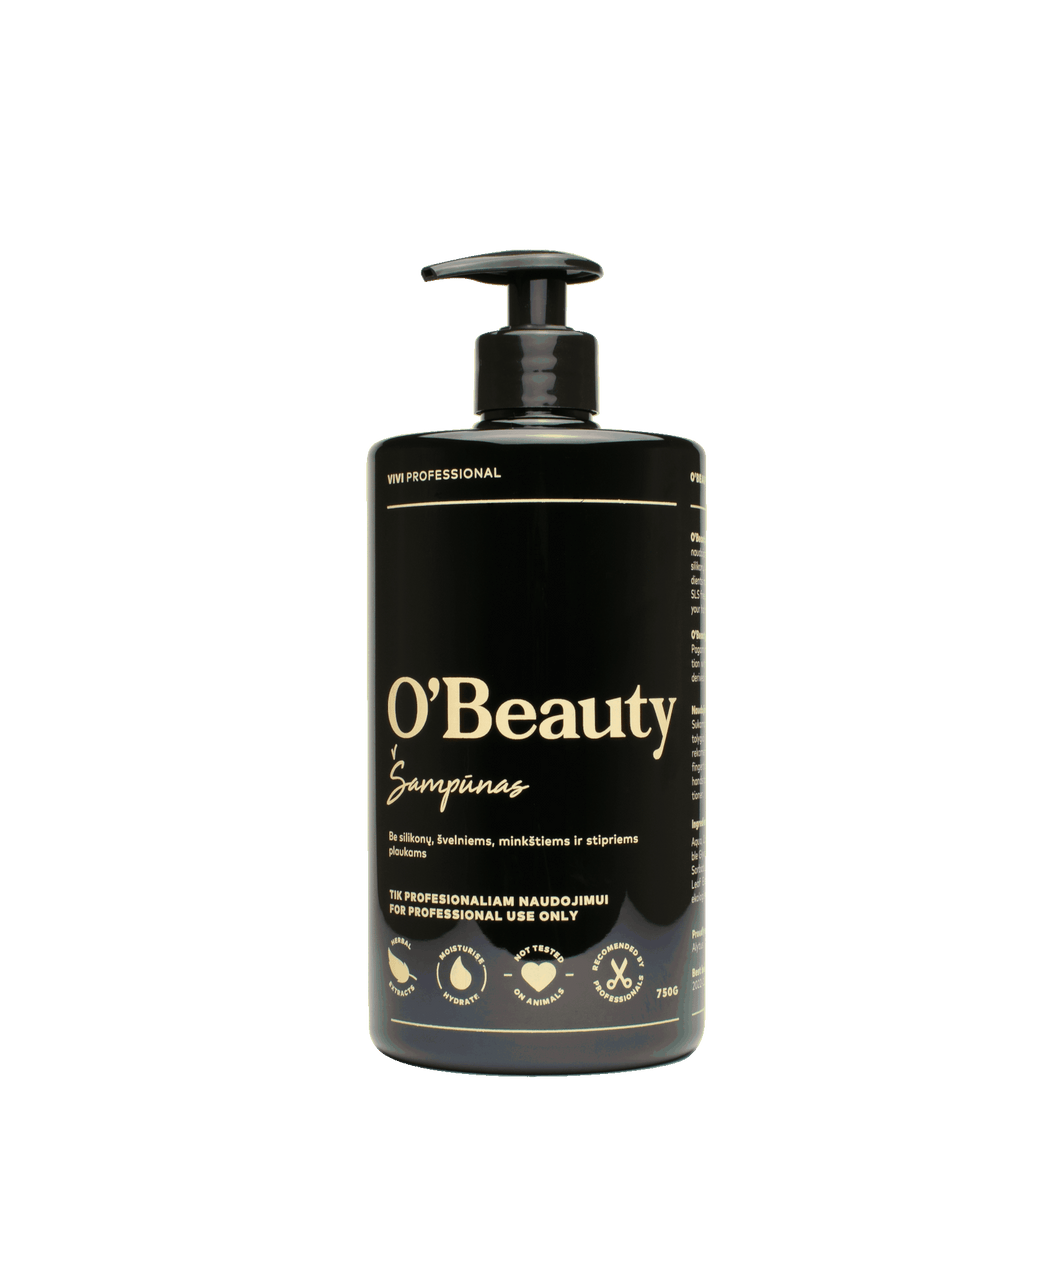 O'Beauty shampoo 720g